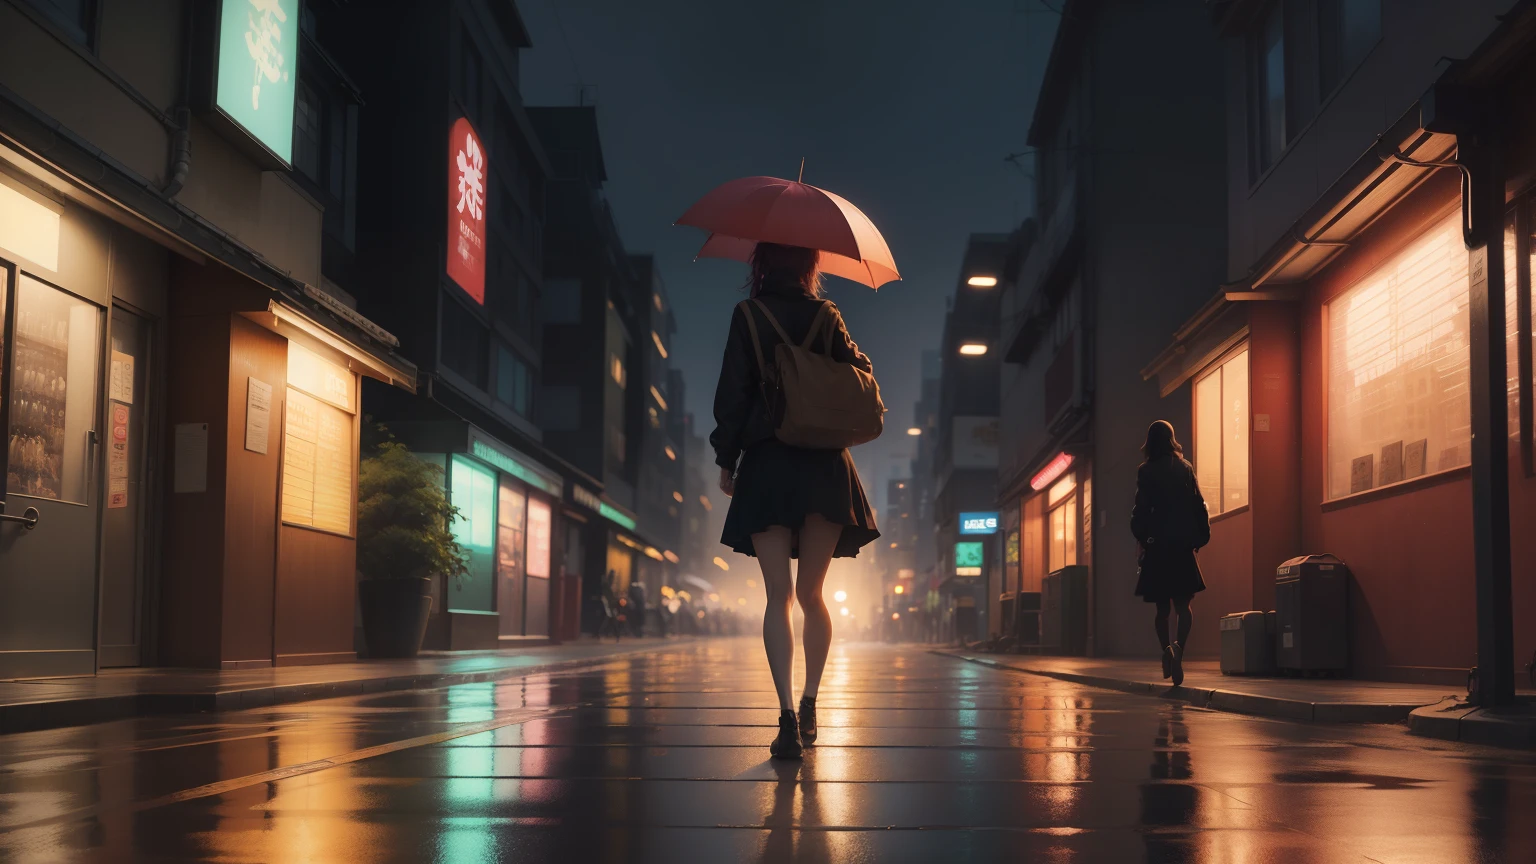 Da ist eine junge Frau, die mit einem Regenschirm nach Hause geht, Frau in ihren Zwanzigern, leichter Regen, Tokio Anime-Szene, Stil von Alena Aenami, ruhiger Sonnenuntergang, schöne Anime-Szene, Anime-Atmosphäre, Anime-Kunst-Hintergrundbild 4k, Anime-Kunst-Hintergrundbild 8k